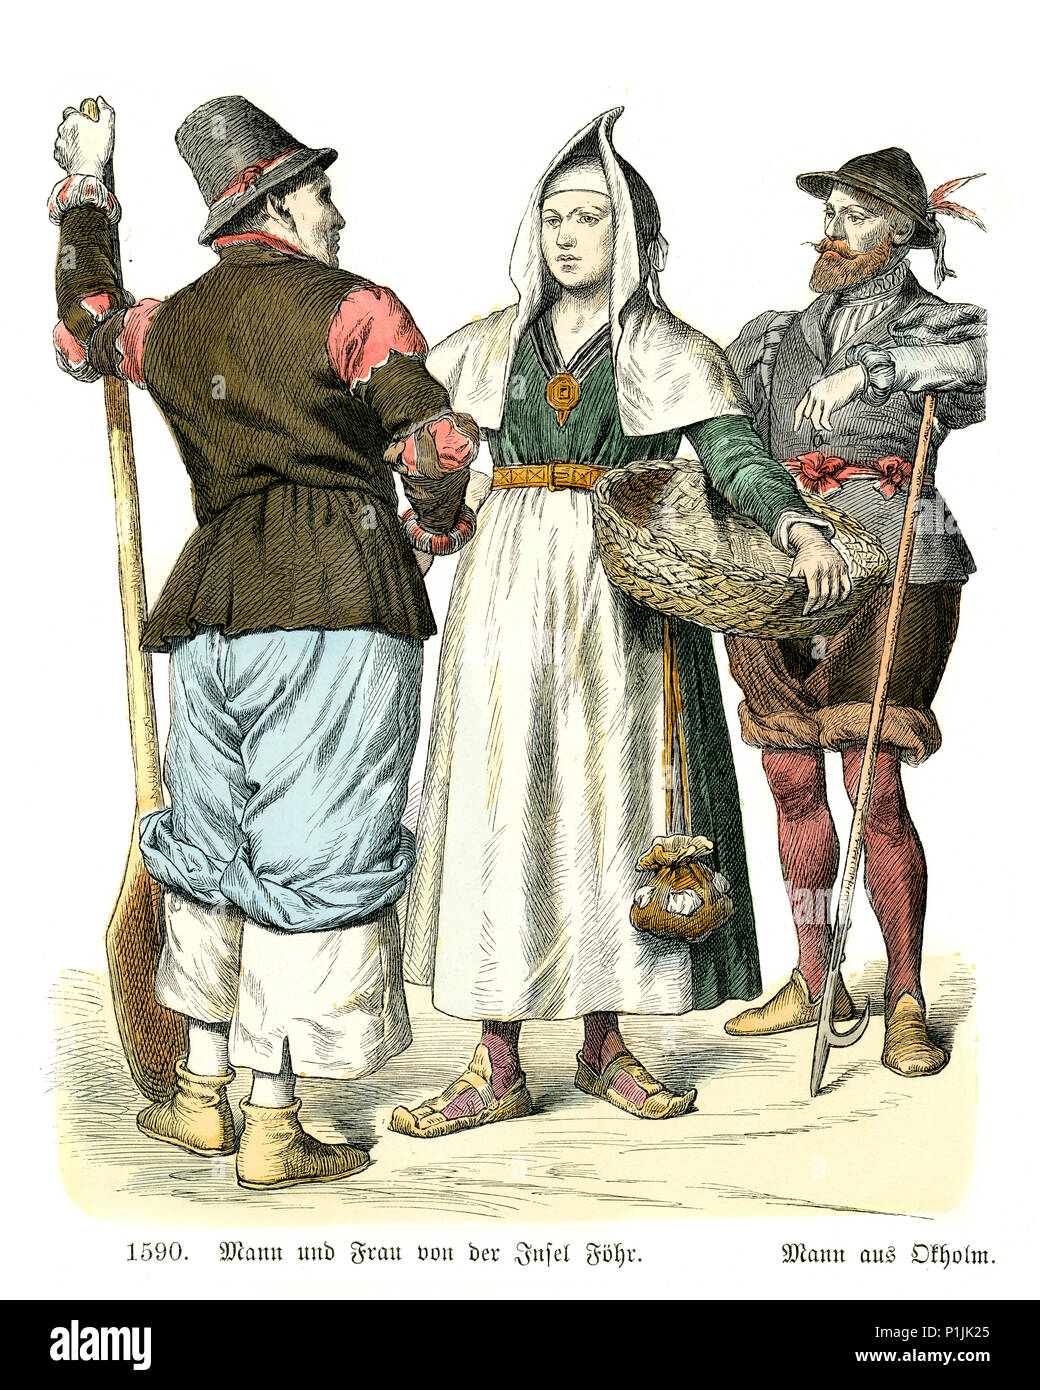 Vintage grabado de la historia de la moda, trajes de Alemania del siglo XVI. Hombre y mujer de Fohr uno de las Islas Frisias del norte de la costa alemana Foto de stock